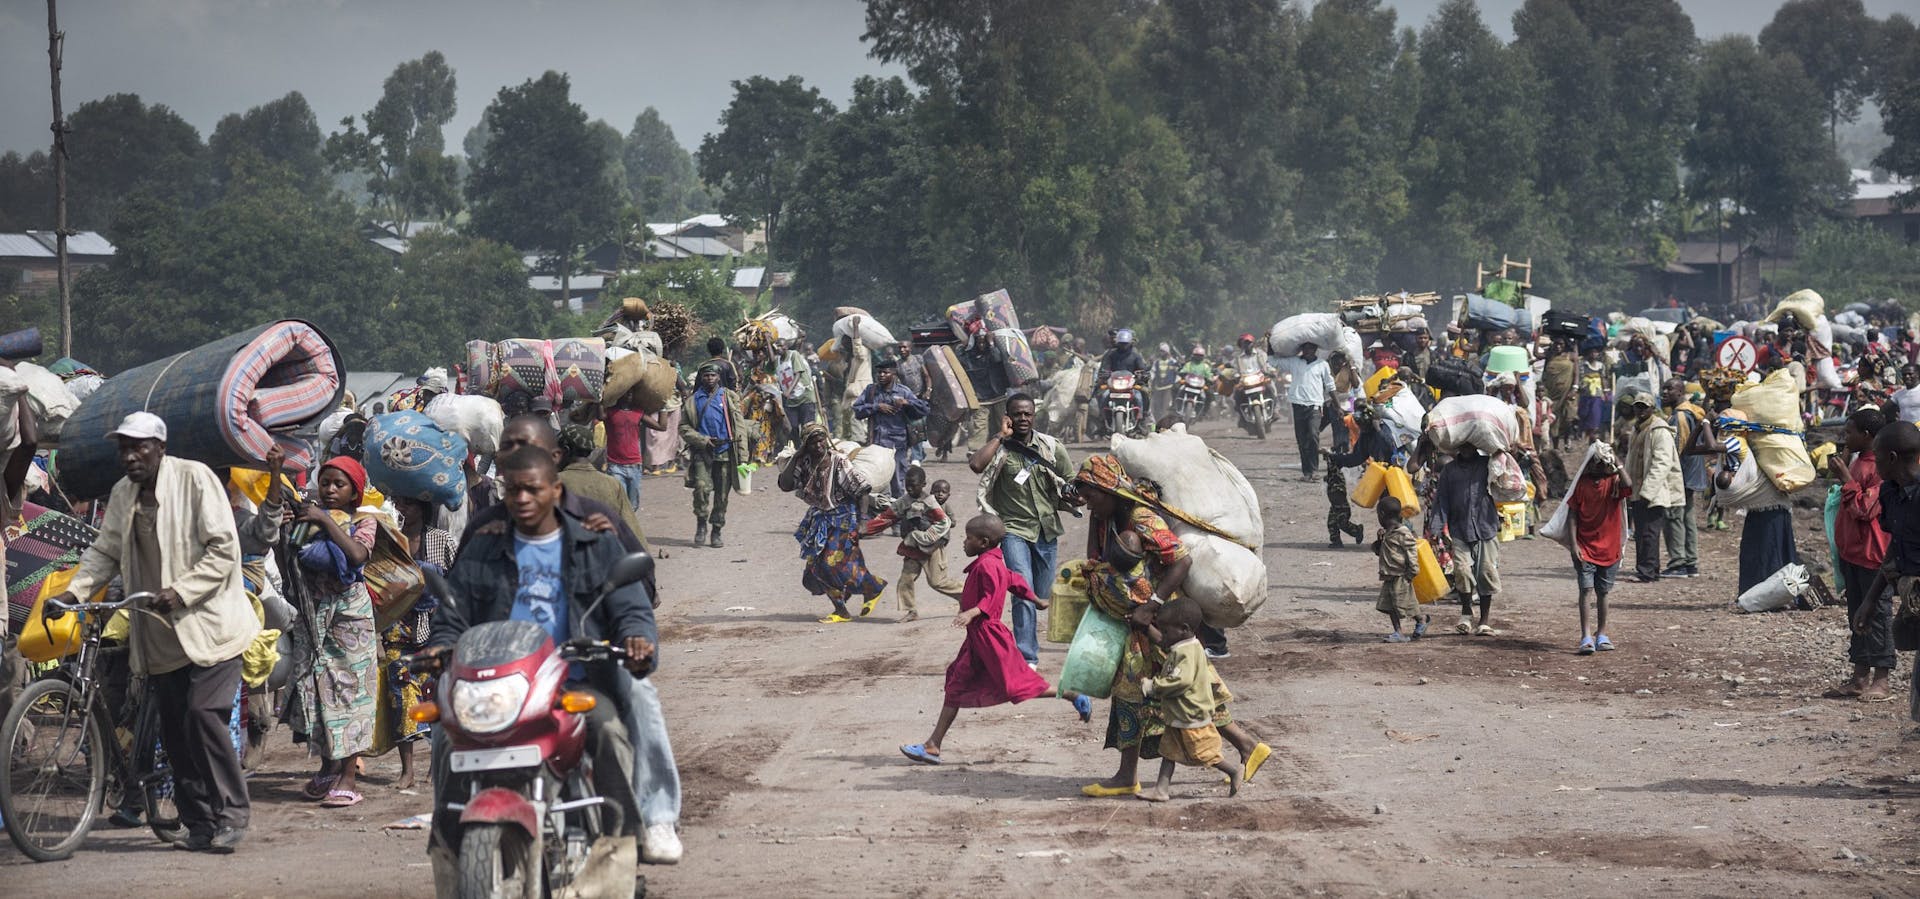 In DR Congo, mensen vluchten in paniek voor oprukken M23 rebellen de stad in. De rebellen zijn inmiddels op enkele kilometers van de belangrijkste stad in Noord Kivu genaderd.